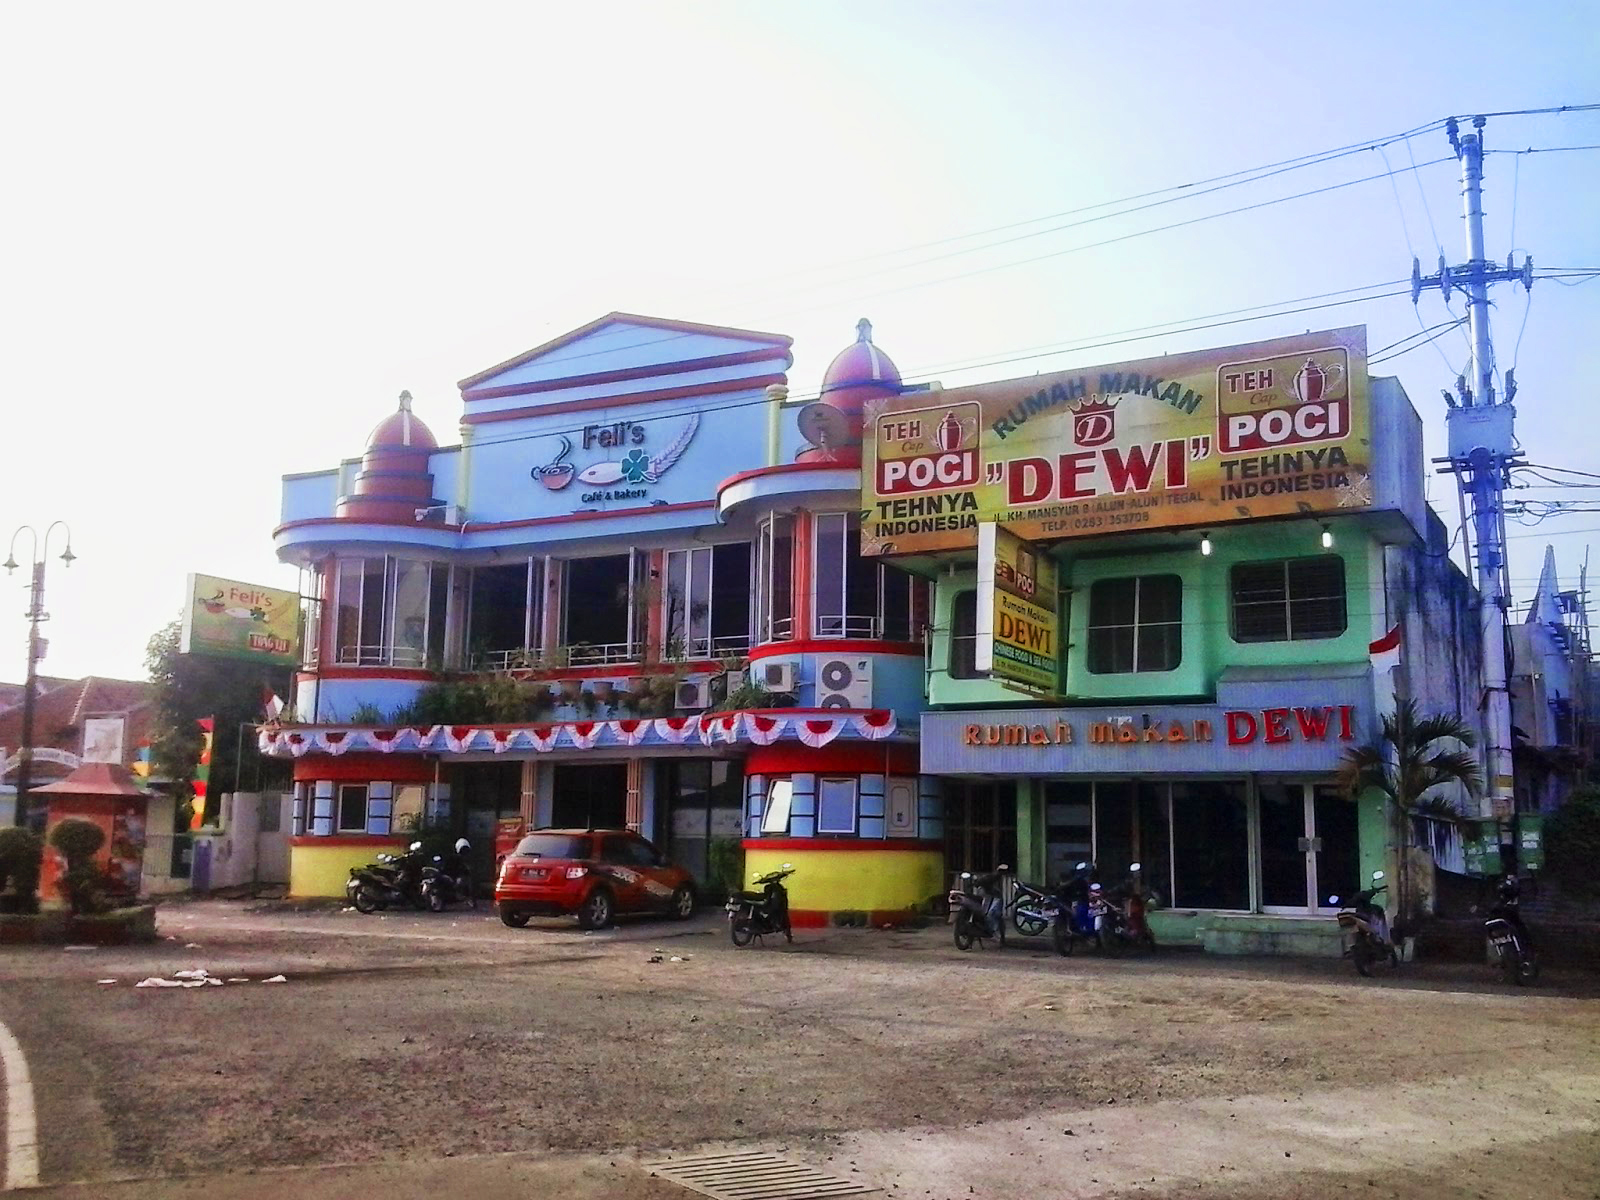 Bioskop Roxy - Bioskop Roxy (Dewi) pernah menjadi tempat muhibah grup terkenal sandiwara dari Surabaya 